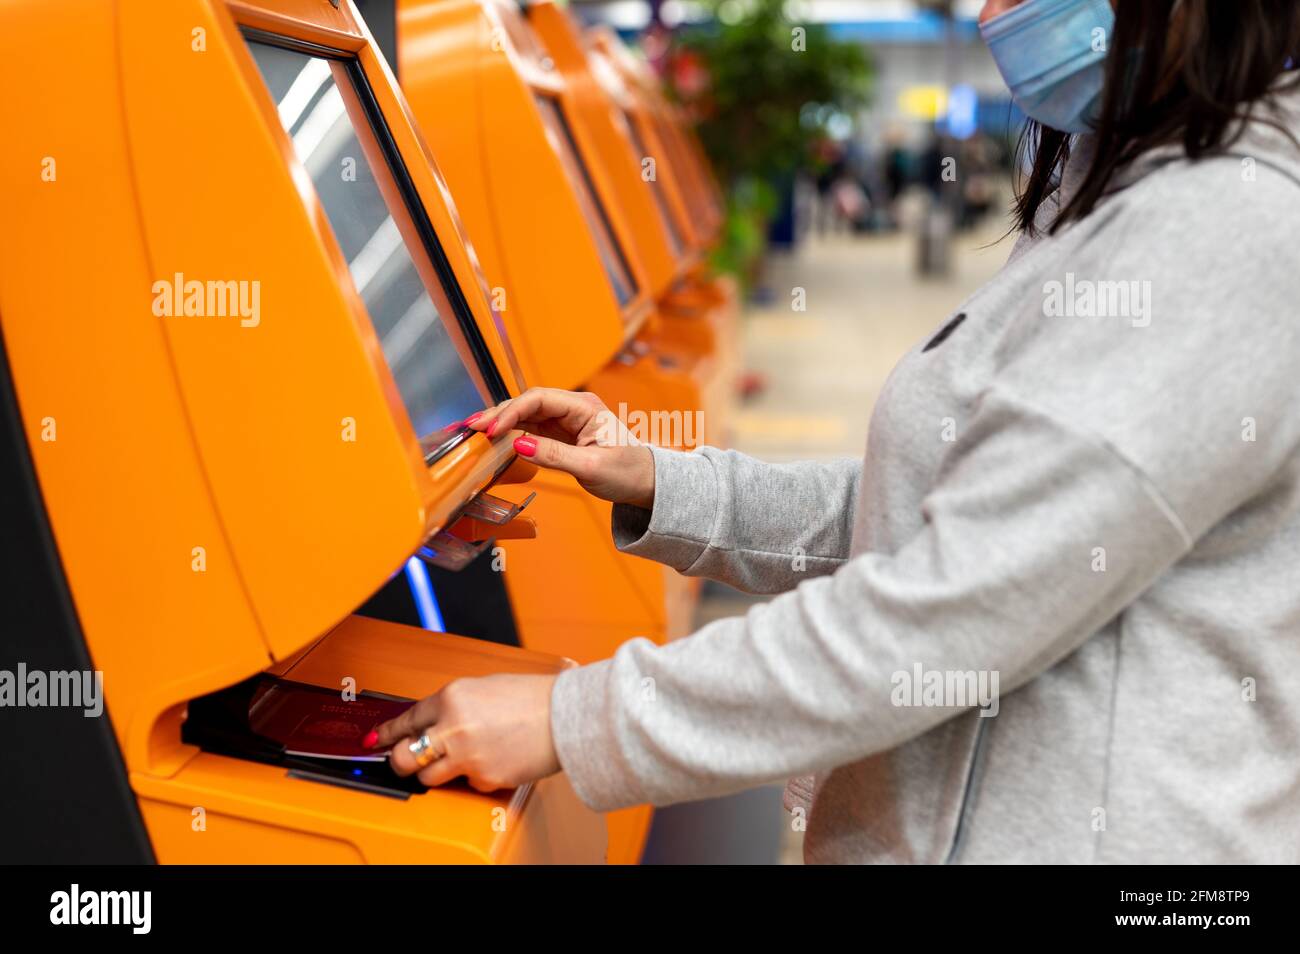 la donna scansiona il passaporto al banco della compagnia aerea per il check-in in aeroporto, mentre la donna si autoregistrava per il volo. Chiosco self-service Foto Stock